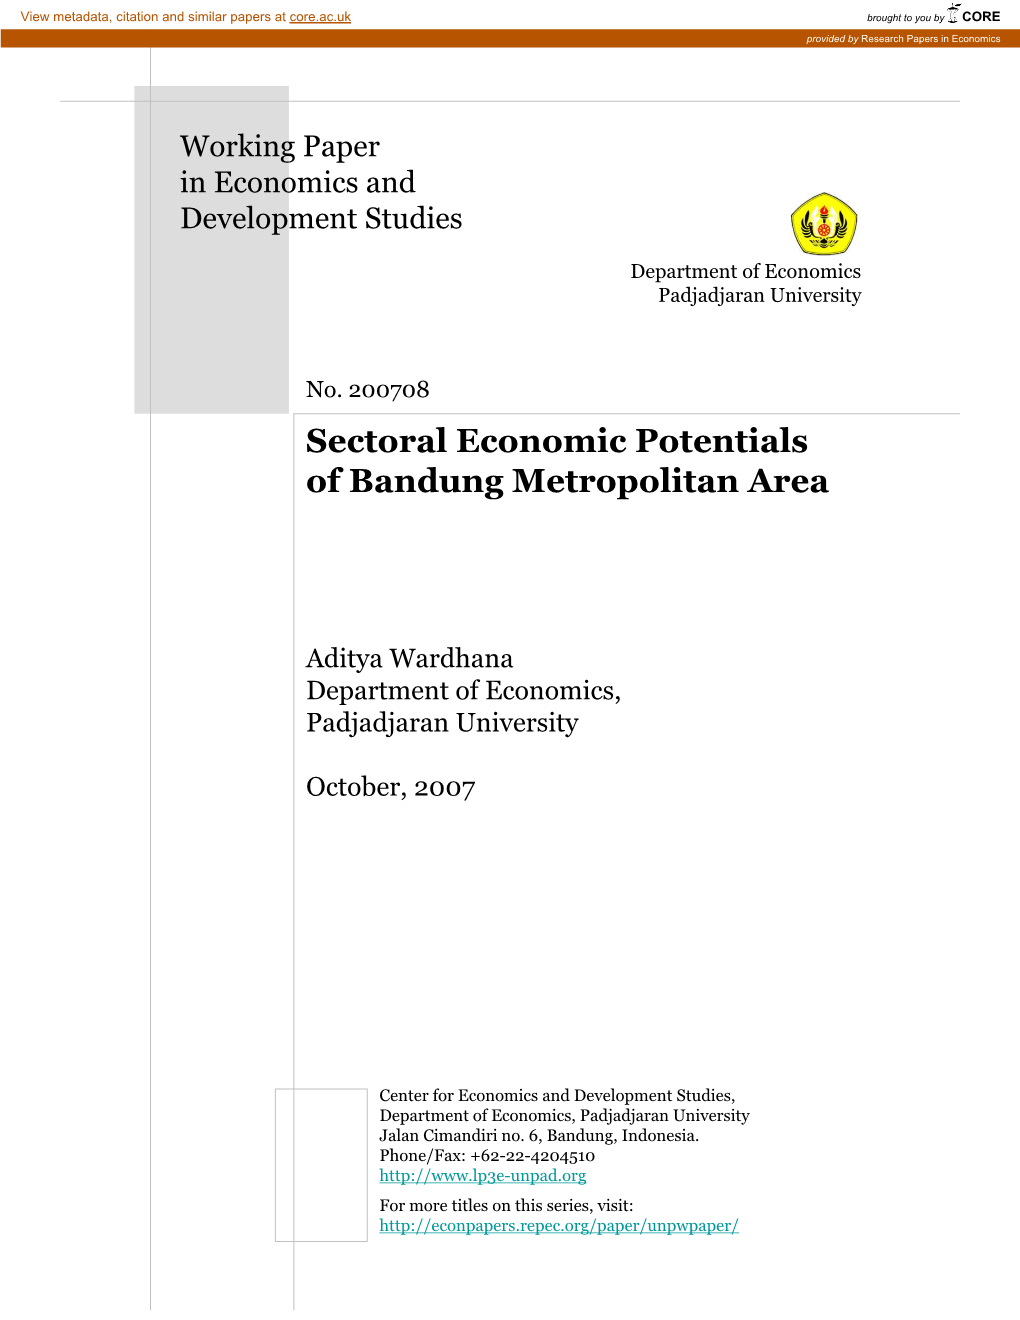 Sectoral Economic Potentials of Bandung Metropolitan Area